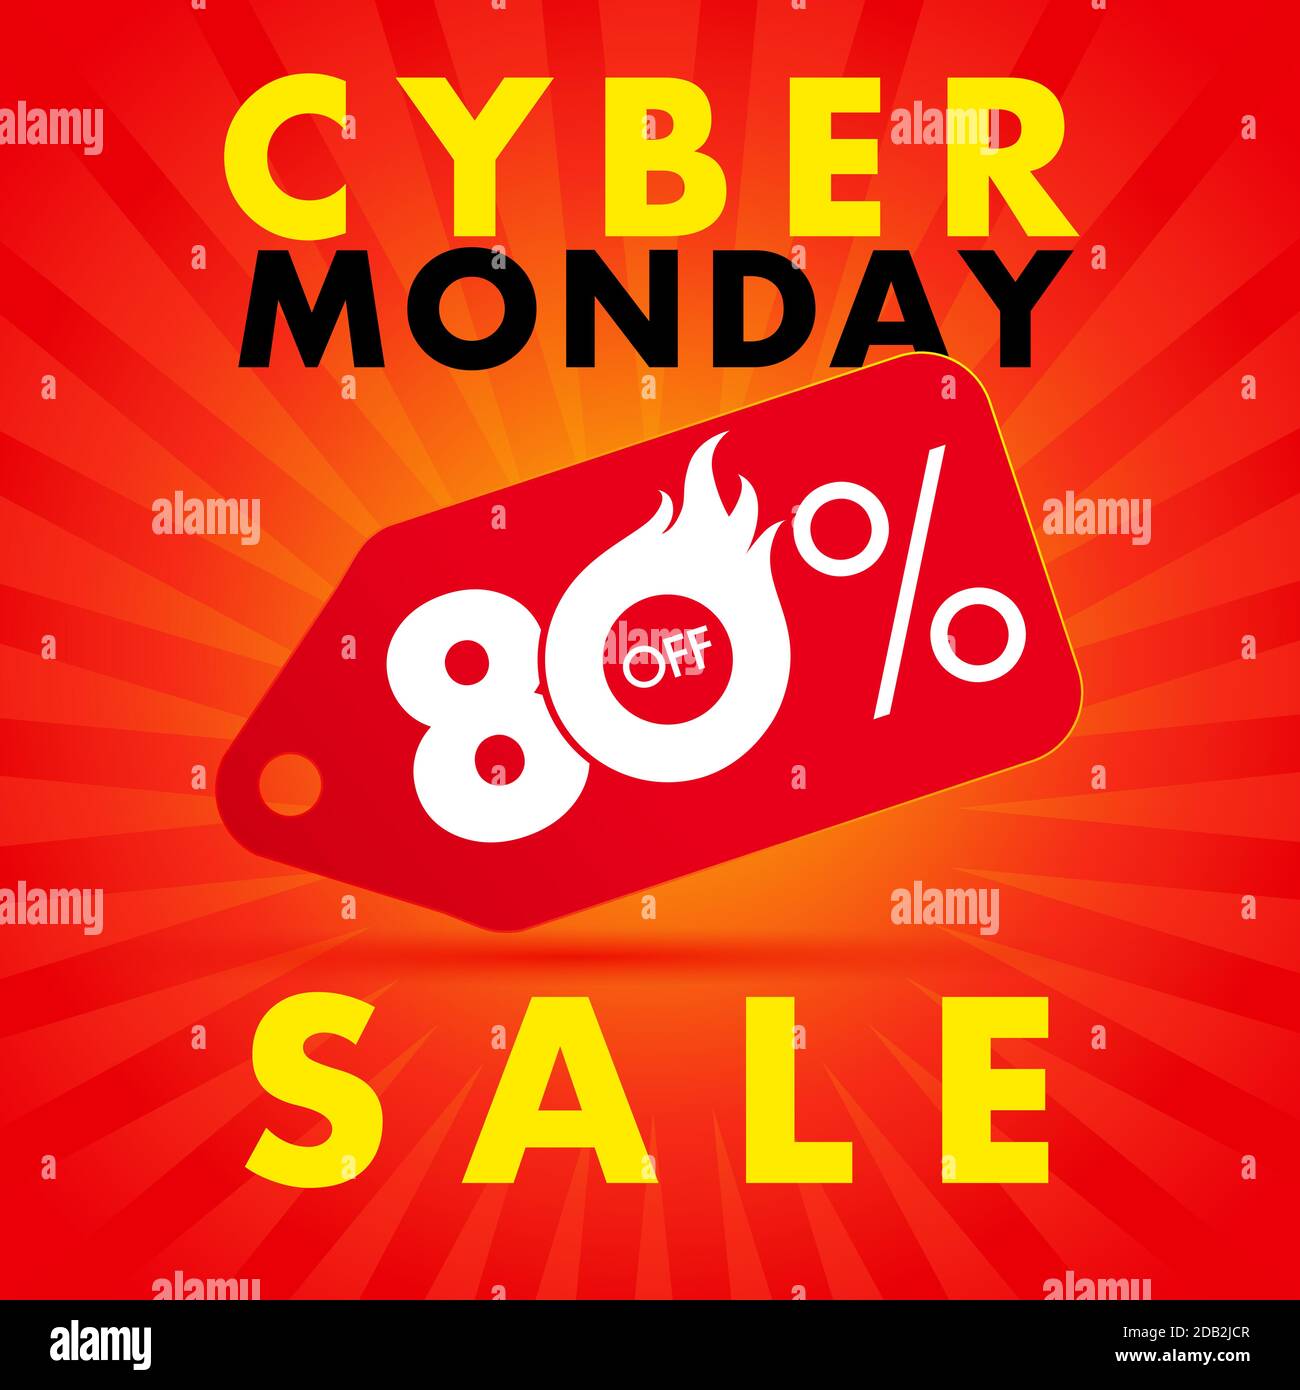 Offerta Cyber Monday striscioni su sfondo rosso 80% di sconto. Promozione di concetto di vendita Cyber Monday per l'esposizione di siti Web con testo su travi rosse. Vect Illustrazione Vettoriale